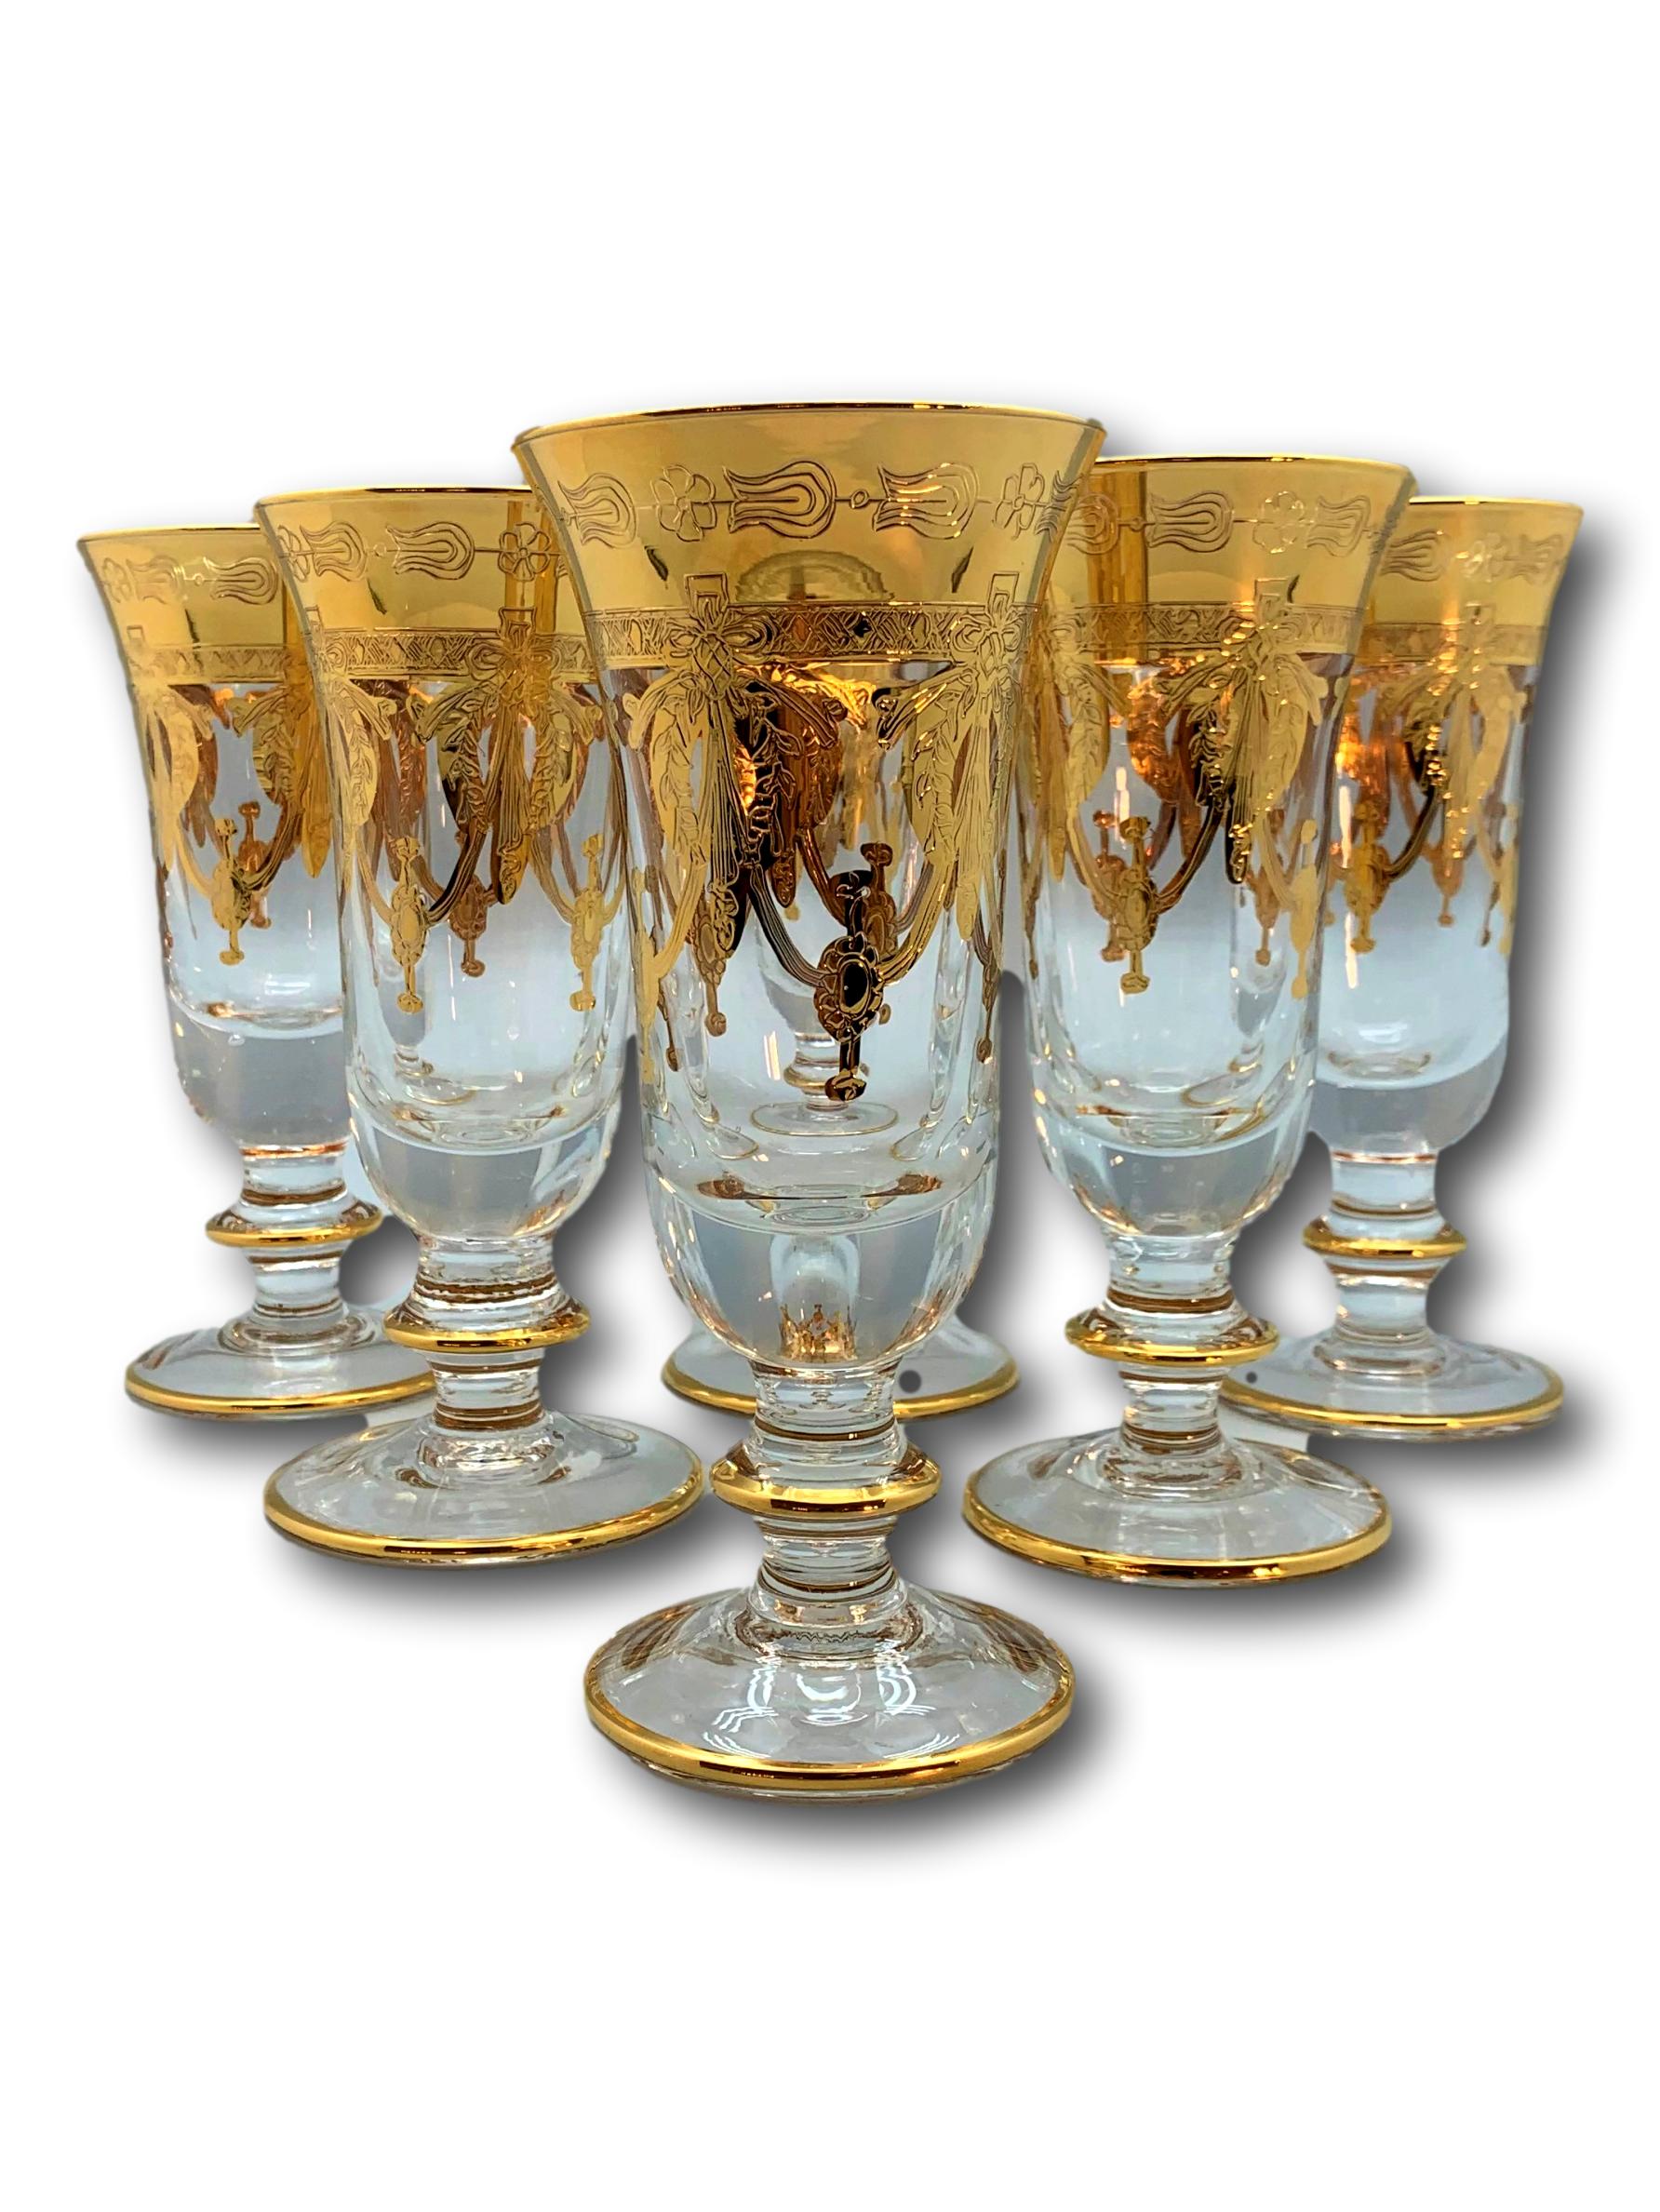 Exclusive Murano sparkling wine glasses